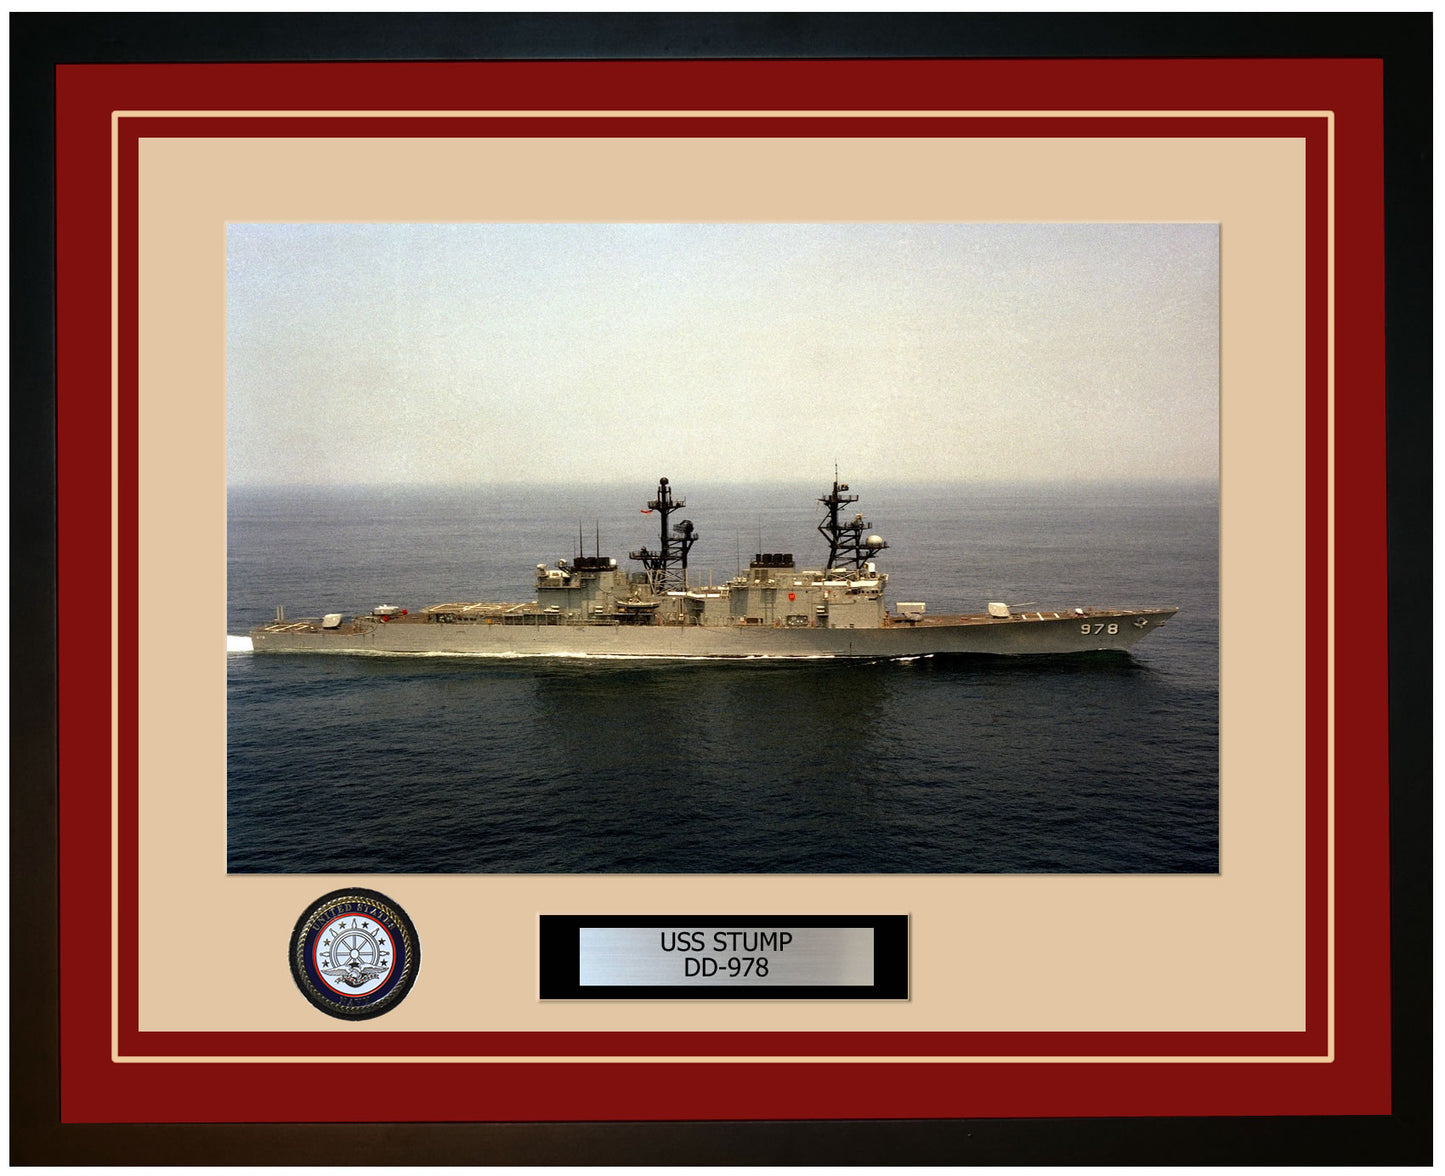 USS STUMP DD-978 Framed Navy Ship Photo Burgundy